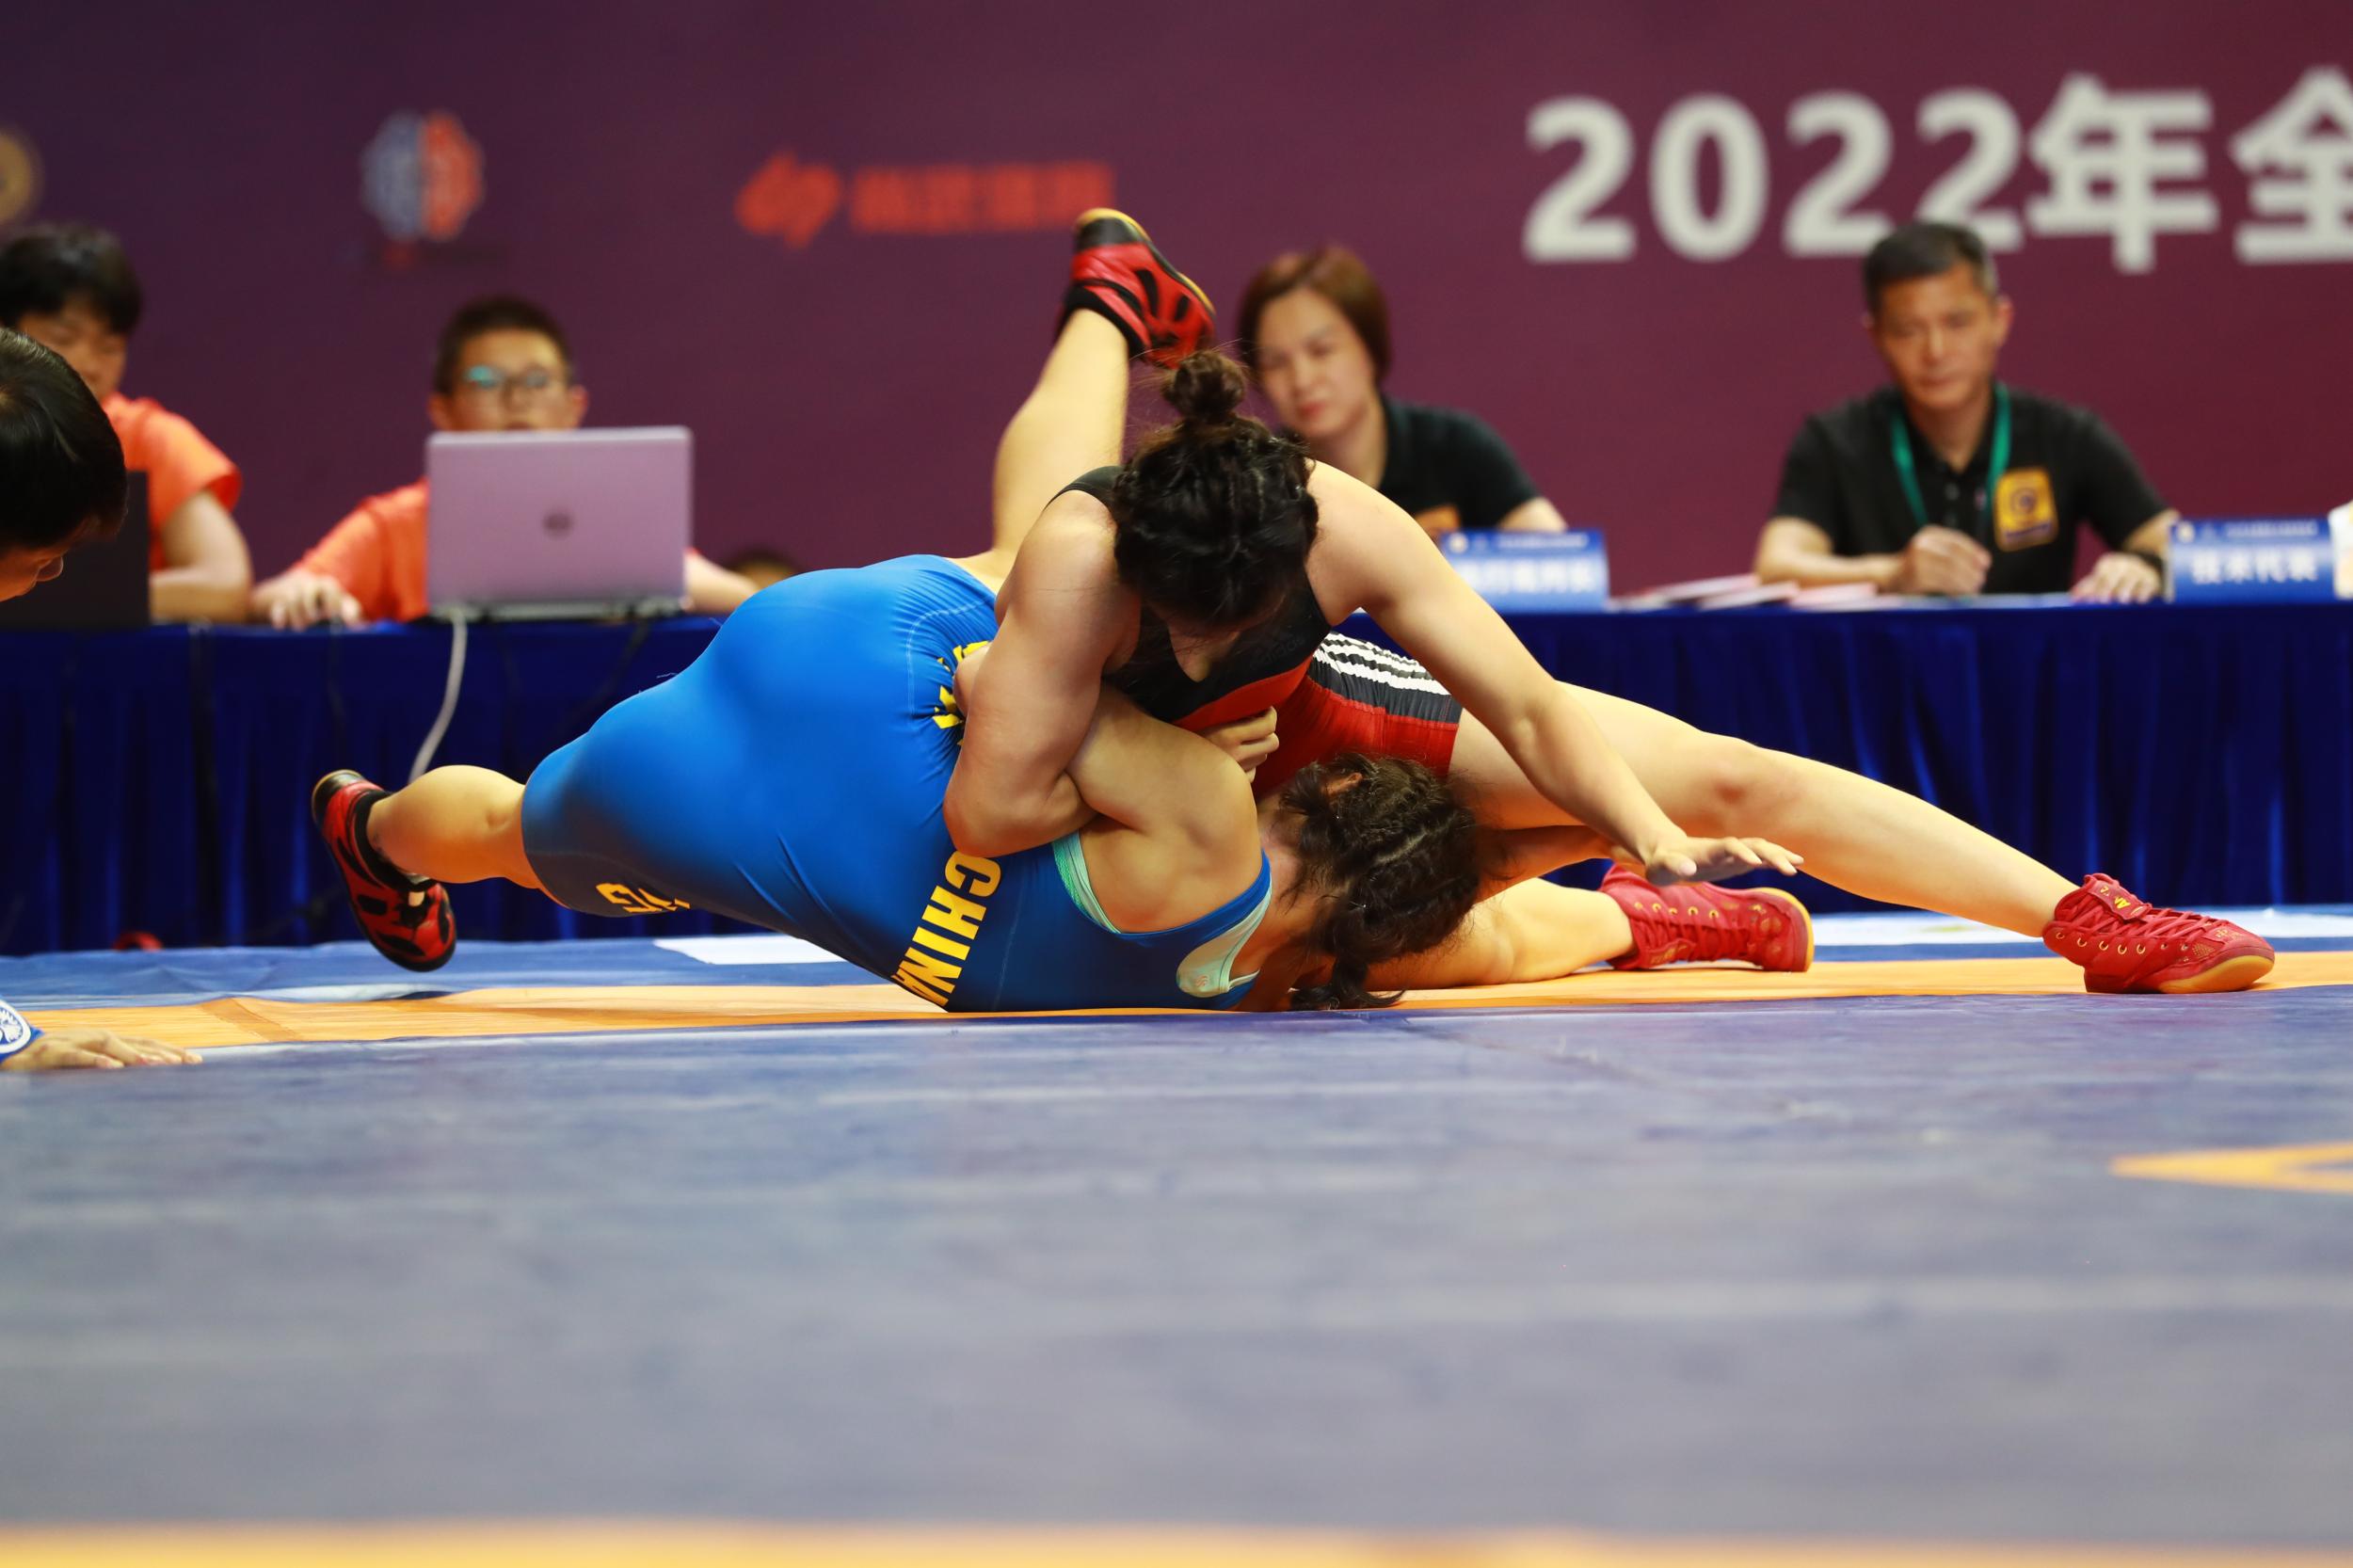 谁说女子不如男！女孩摔跤照样飒！ 387名女选手参加全国国际式摔跤锦标赛暨全运会预赛-新闻中心-温州网